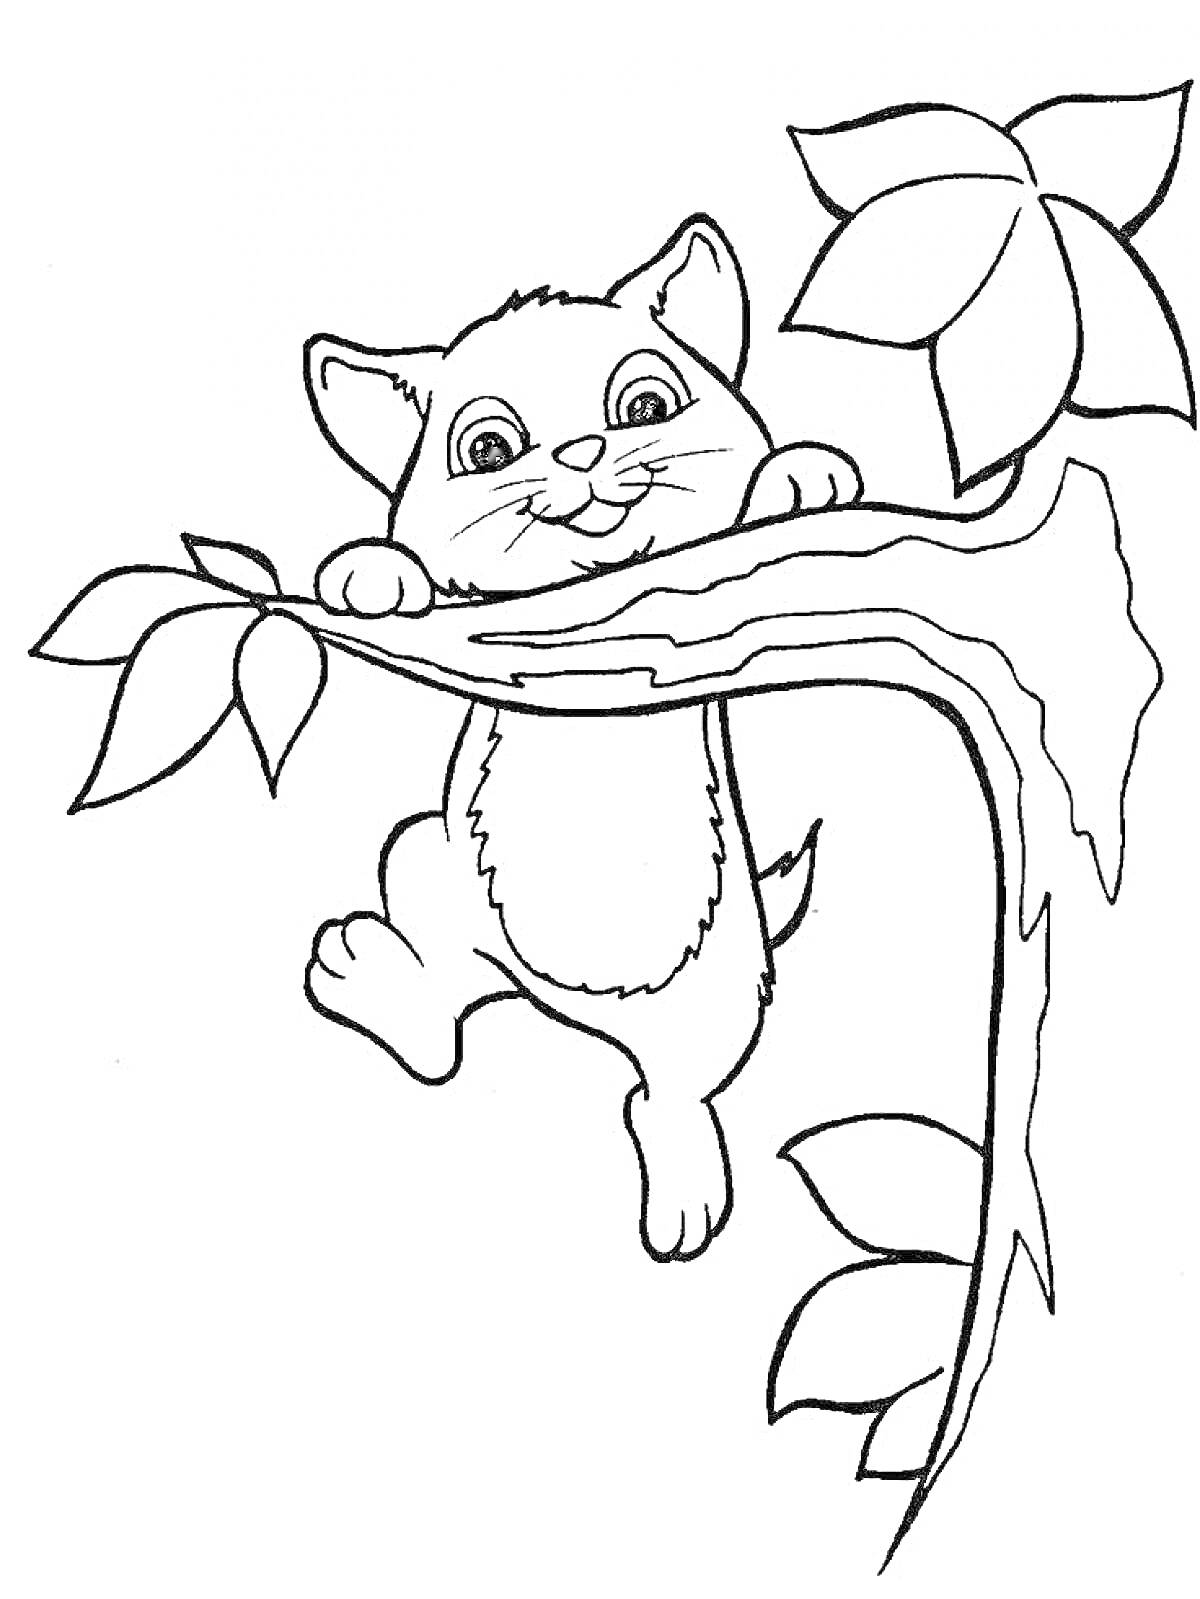 Раскраска Кошечка, забравшаяся на ветку дерева с листьями